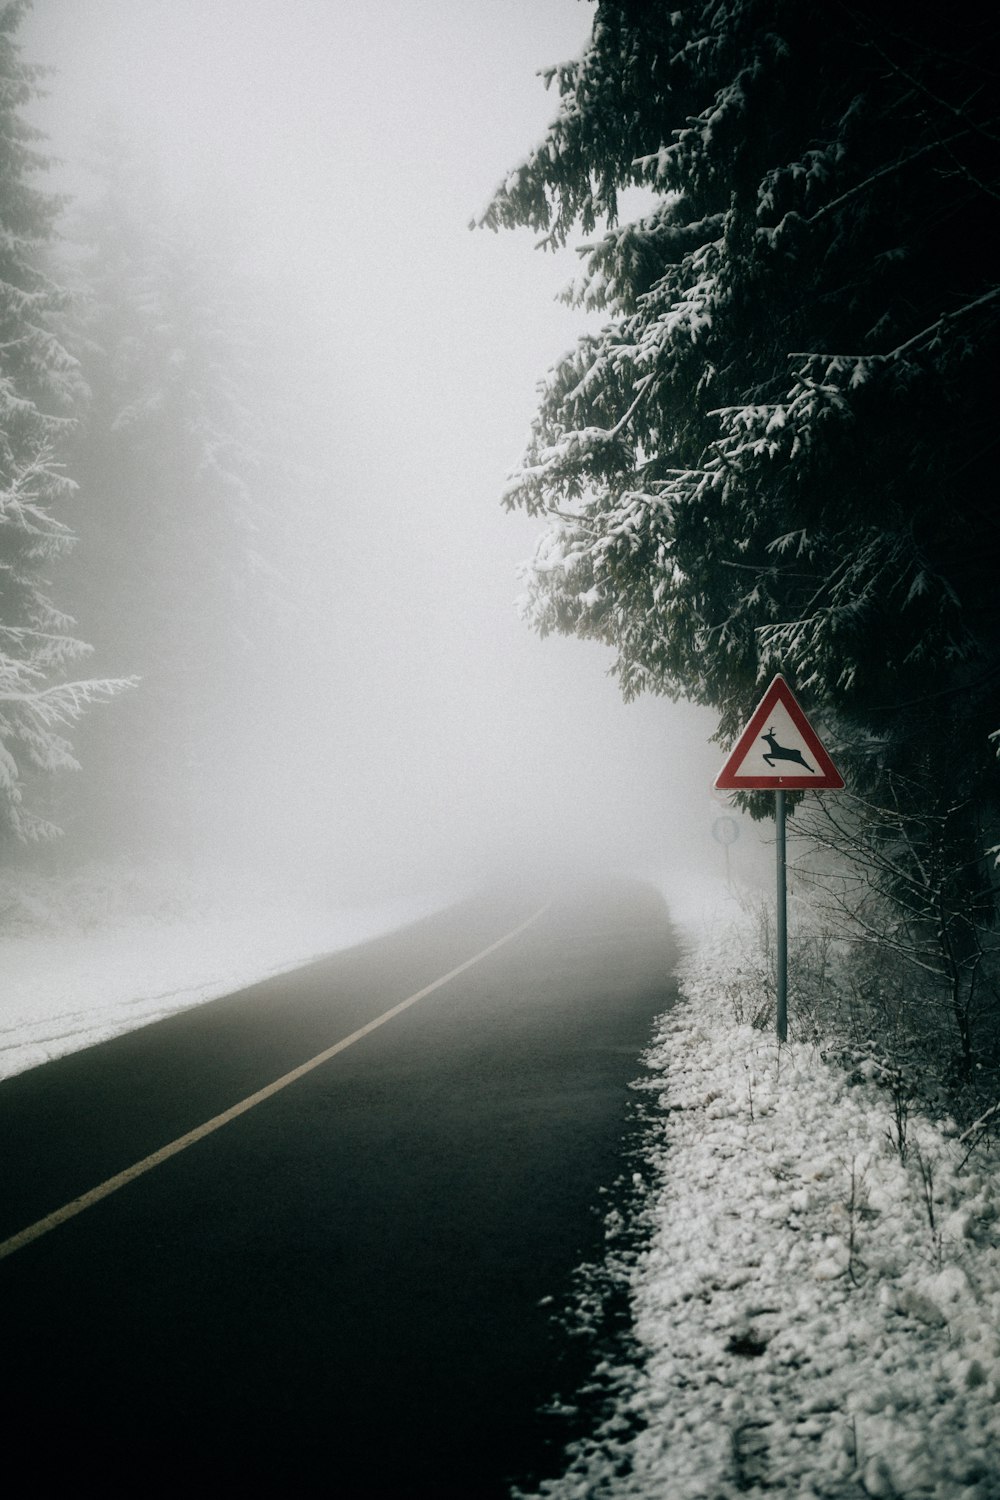 strada asfaltata nera circondata da alberi e coperta da una fitta nebbia bianca